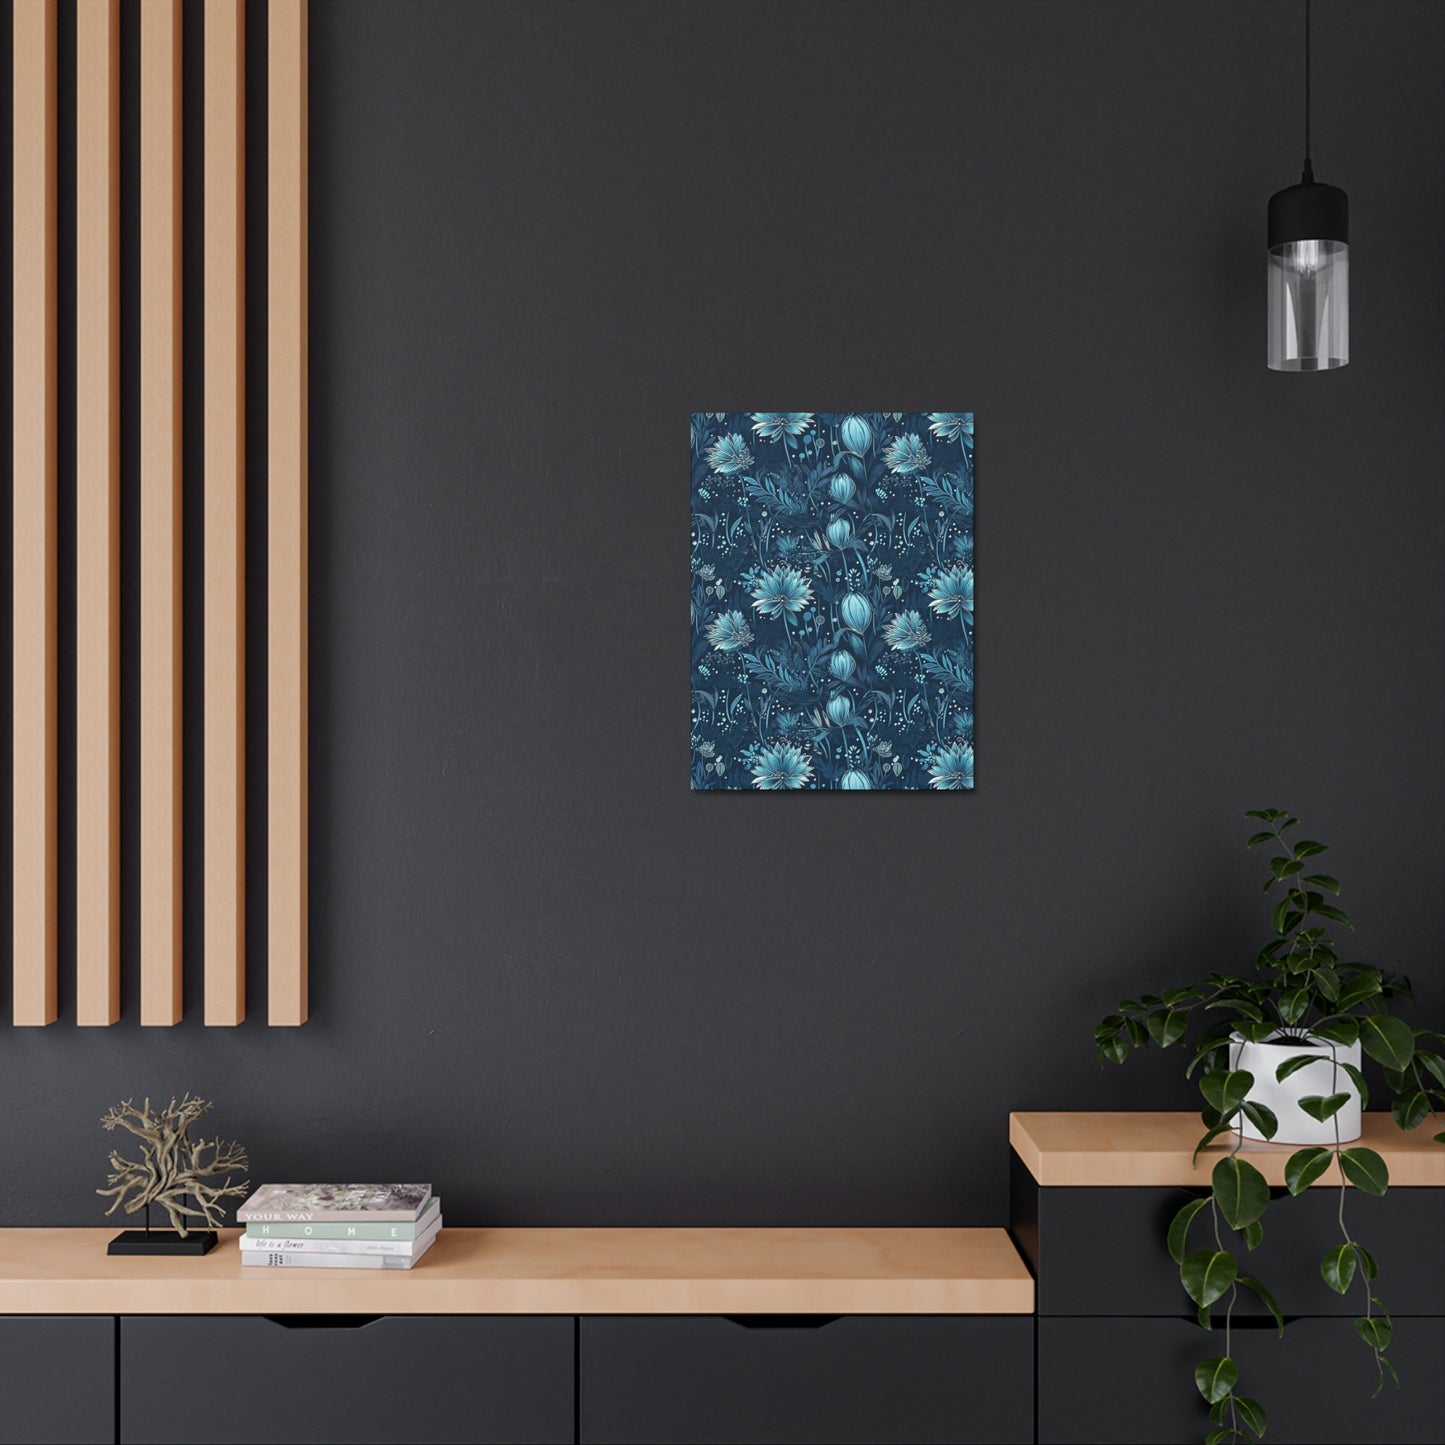 Metallic Blue Scilla - Shimmering Spring Wall Art Canvas